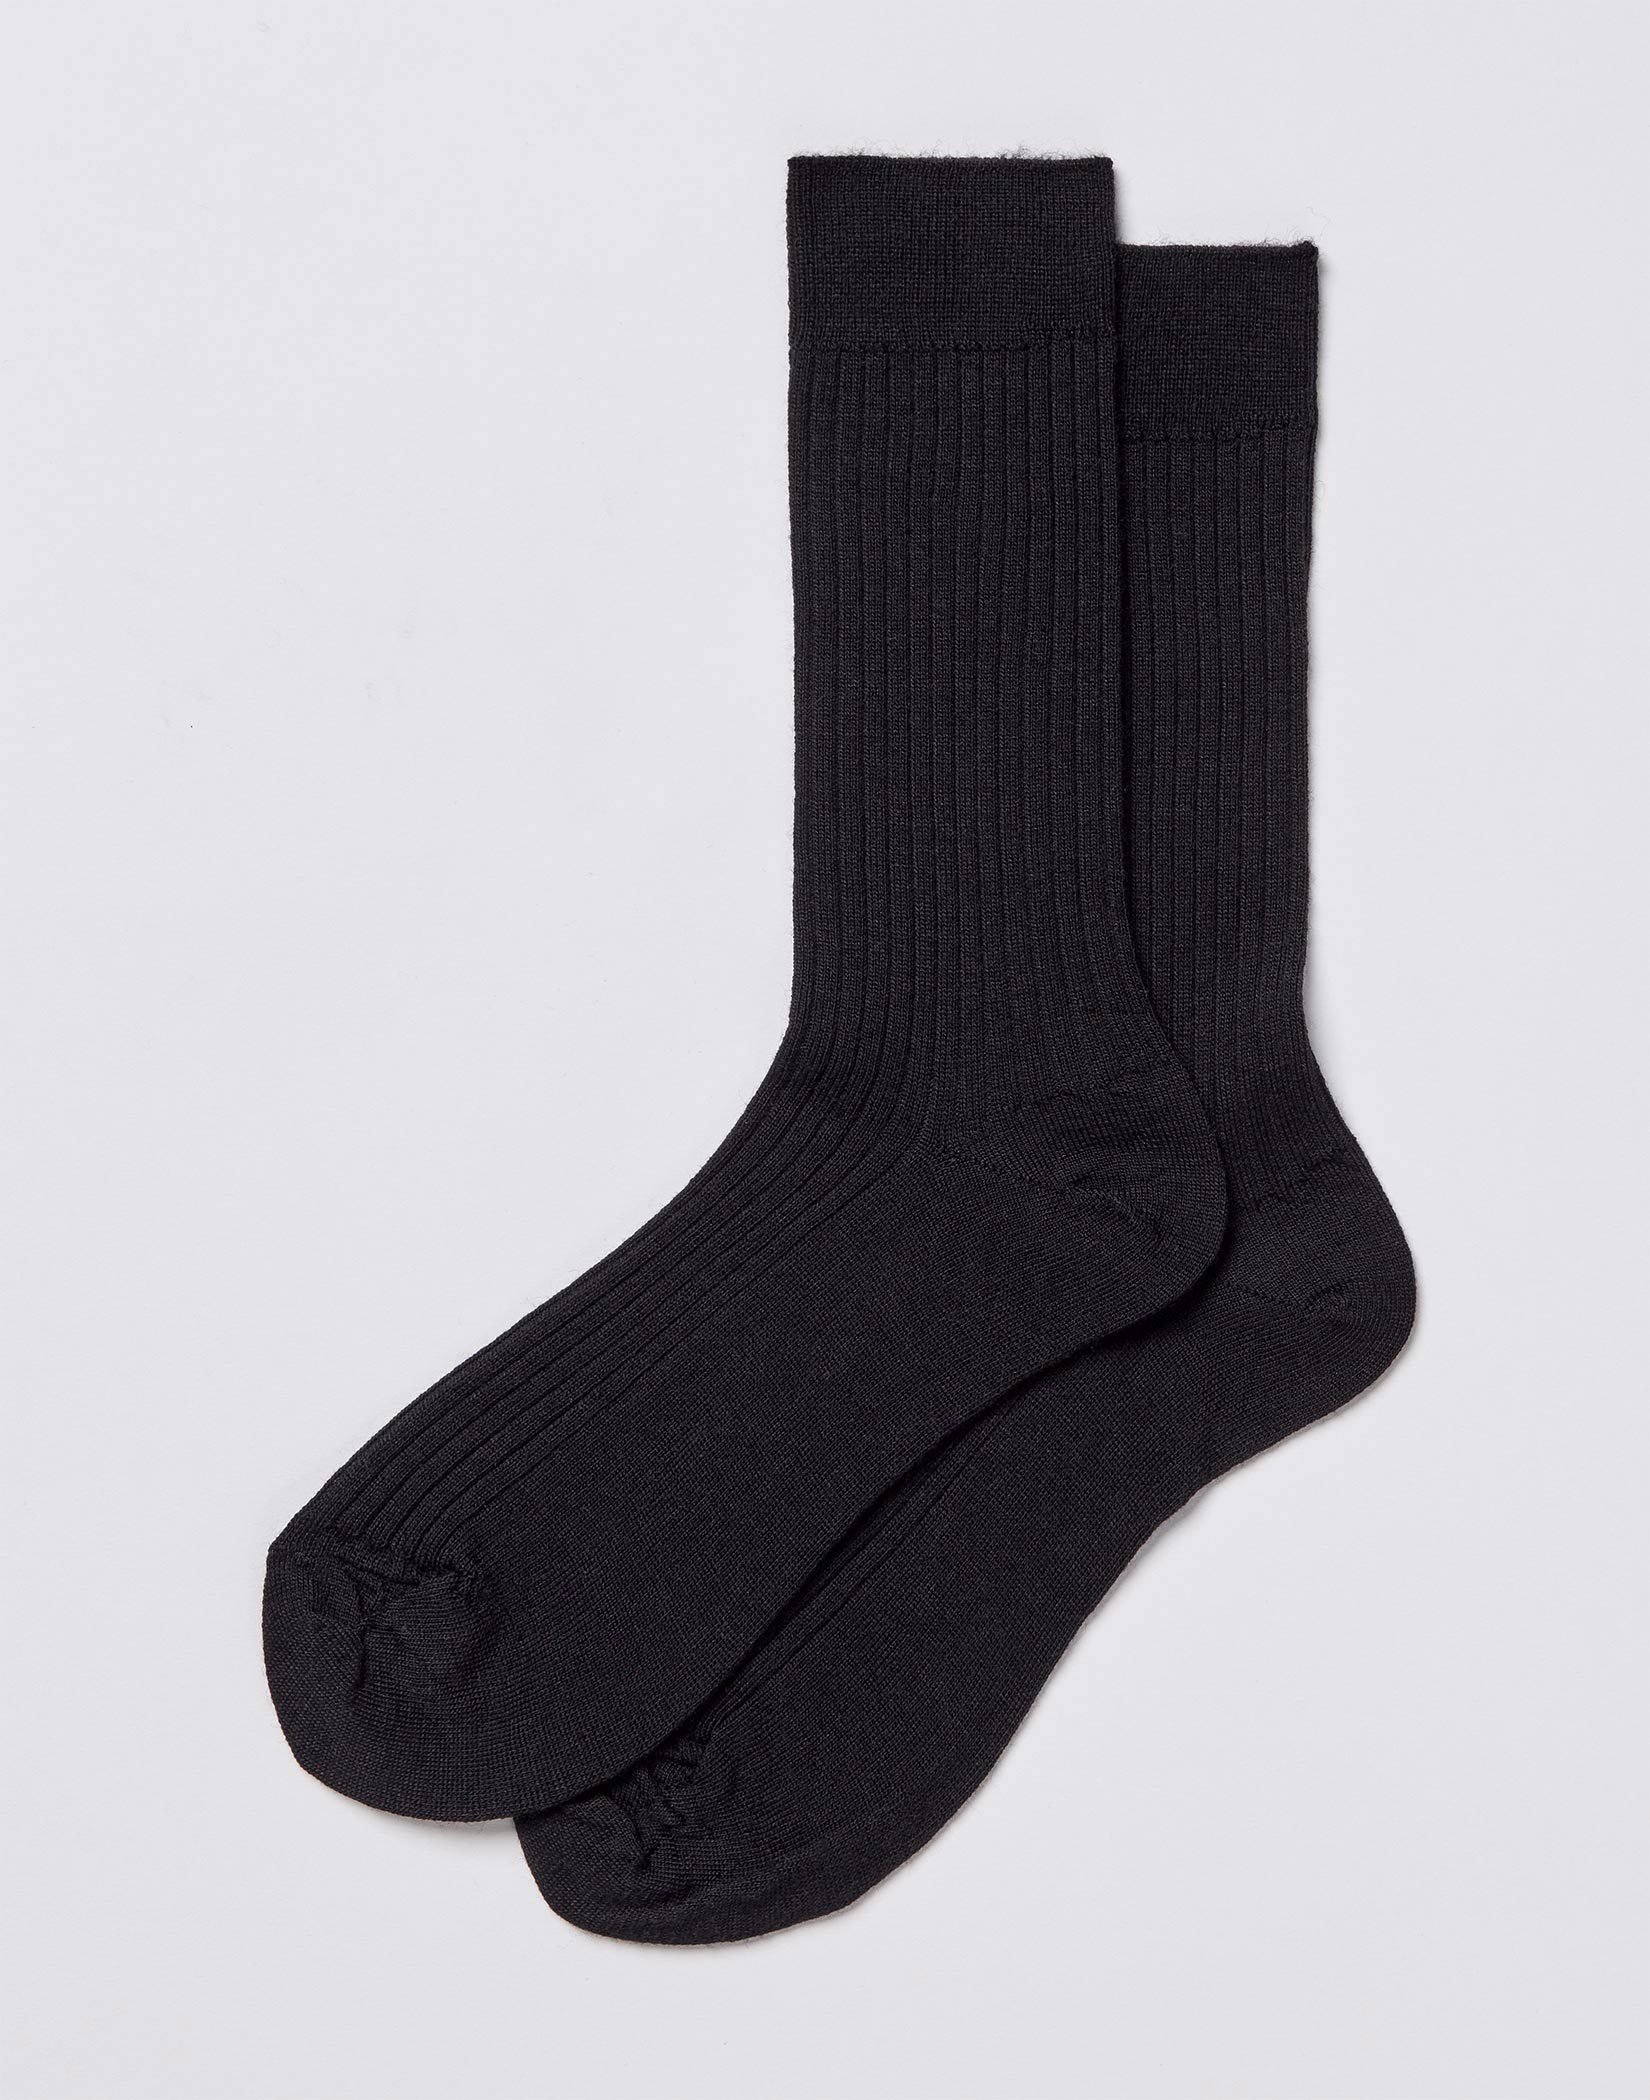 https://cdn.josephturner.co.uk/Original/mens-black-classic-ankle-socks-masossblk_1.jpg